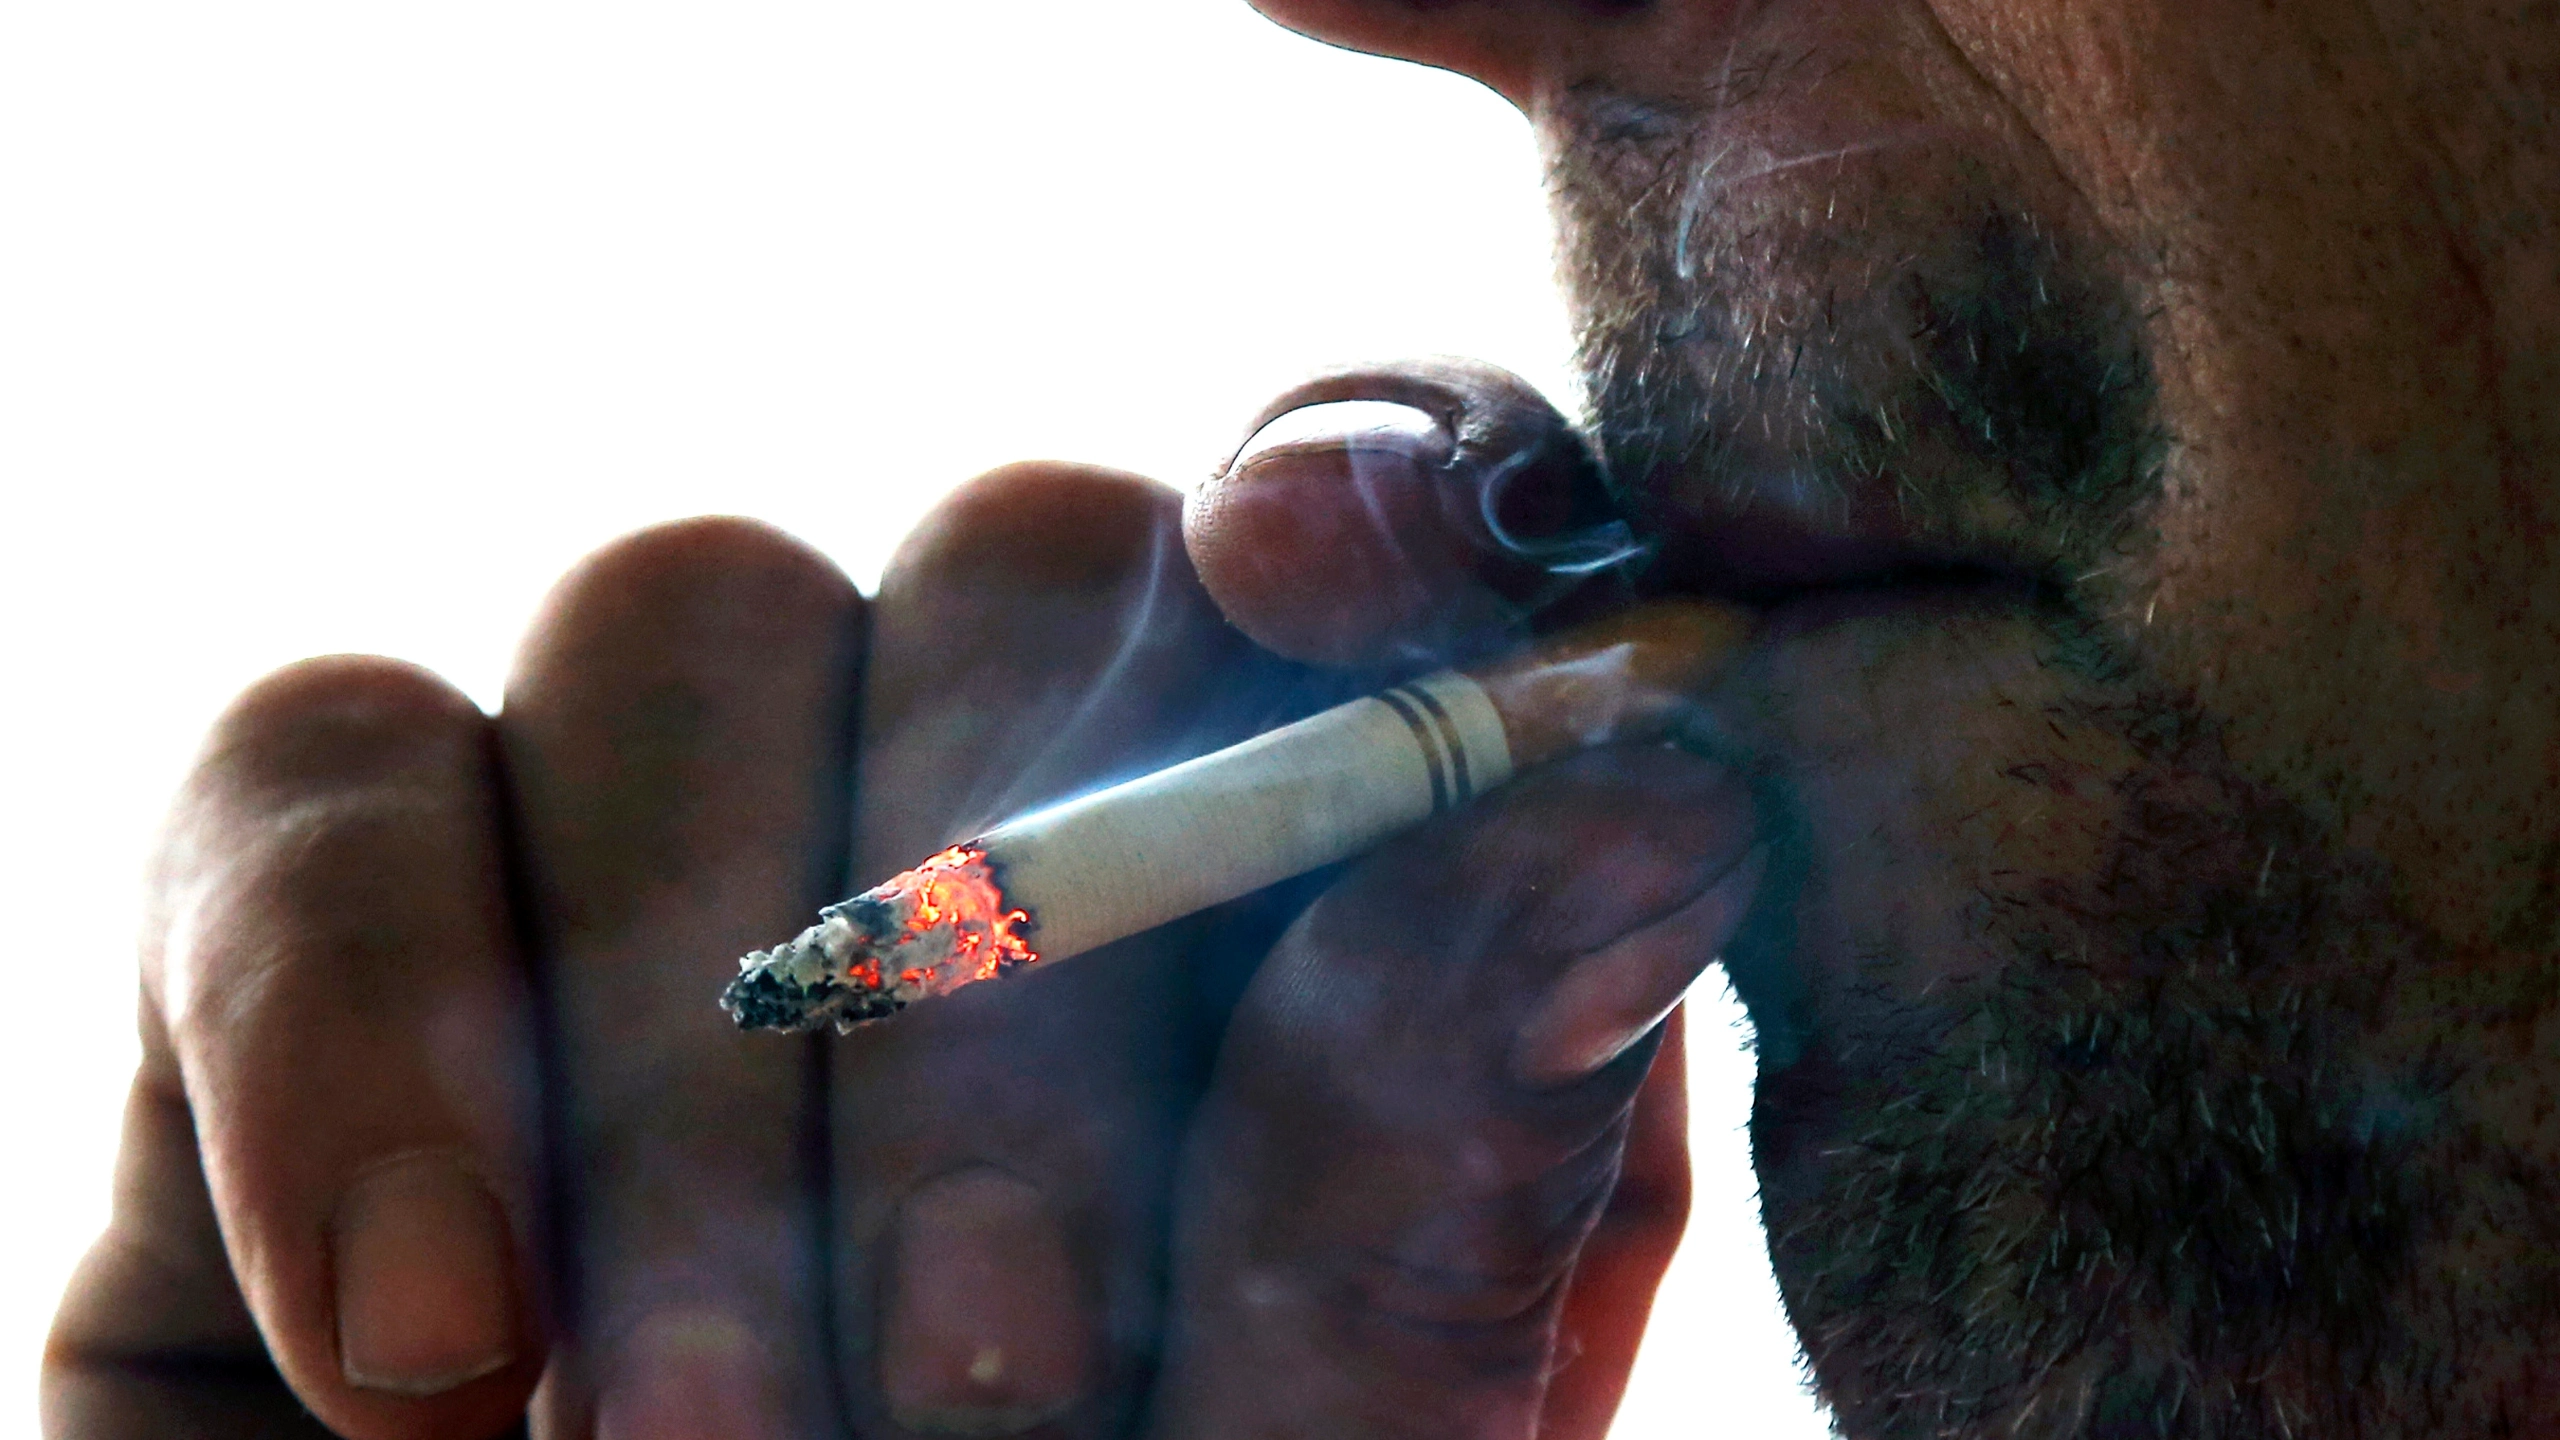 أمريكا تقرر خفض مستوى النيكوتين بالسجائر لمكافحة أمراض السرطان